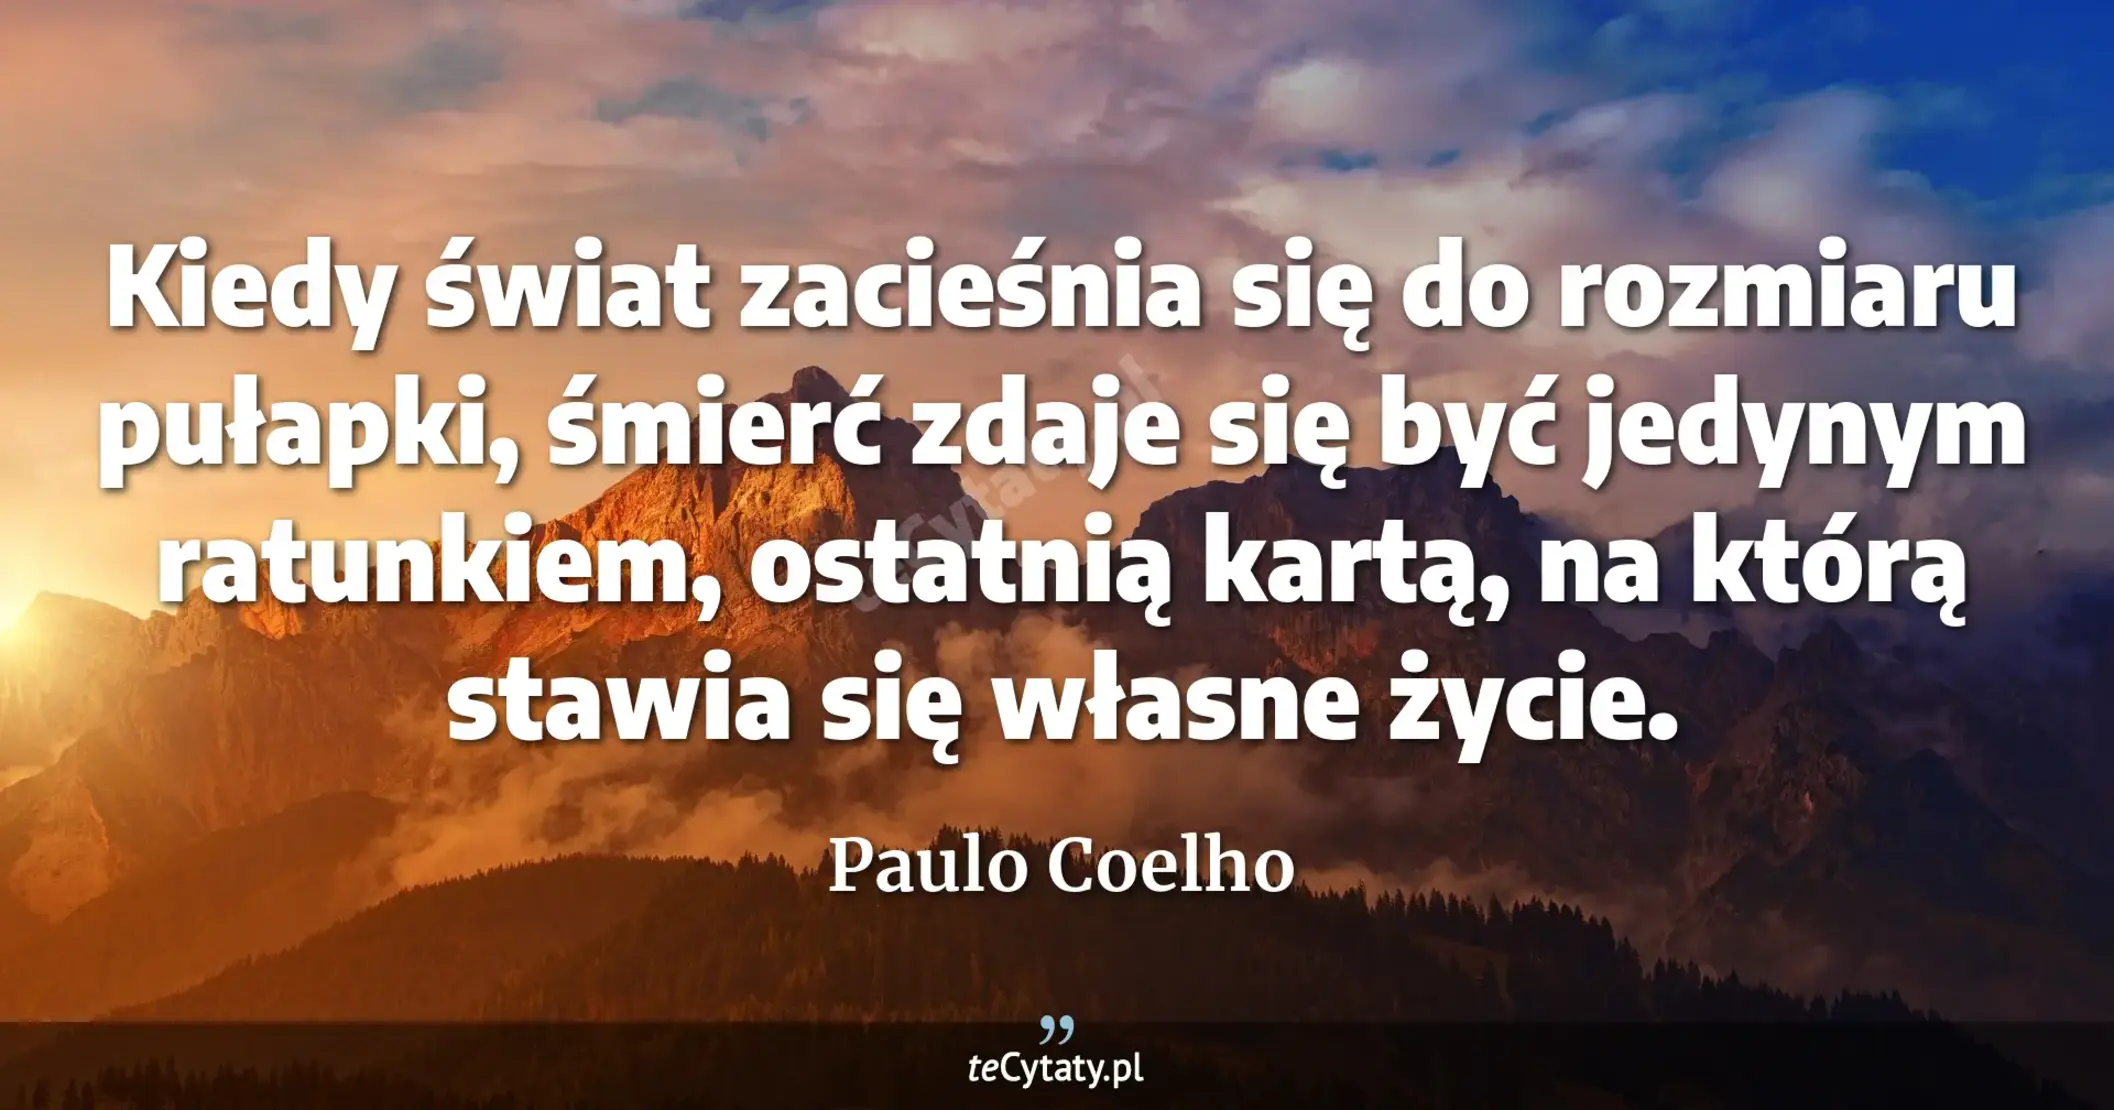 Kiedy świat zacieśnia się do rozmiaru pułapki, śmierć zdaje się być jedynym ratunkiem, ostatnią kartą, na którą stawia się własne życie. - Paulo Coelho